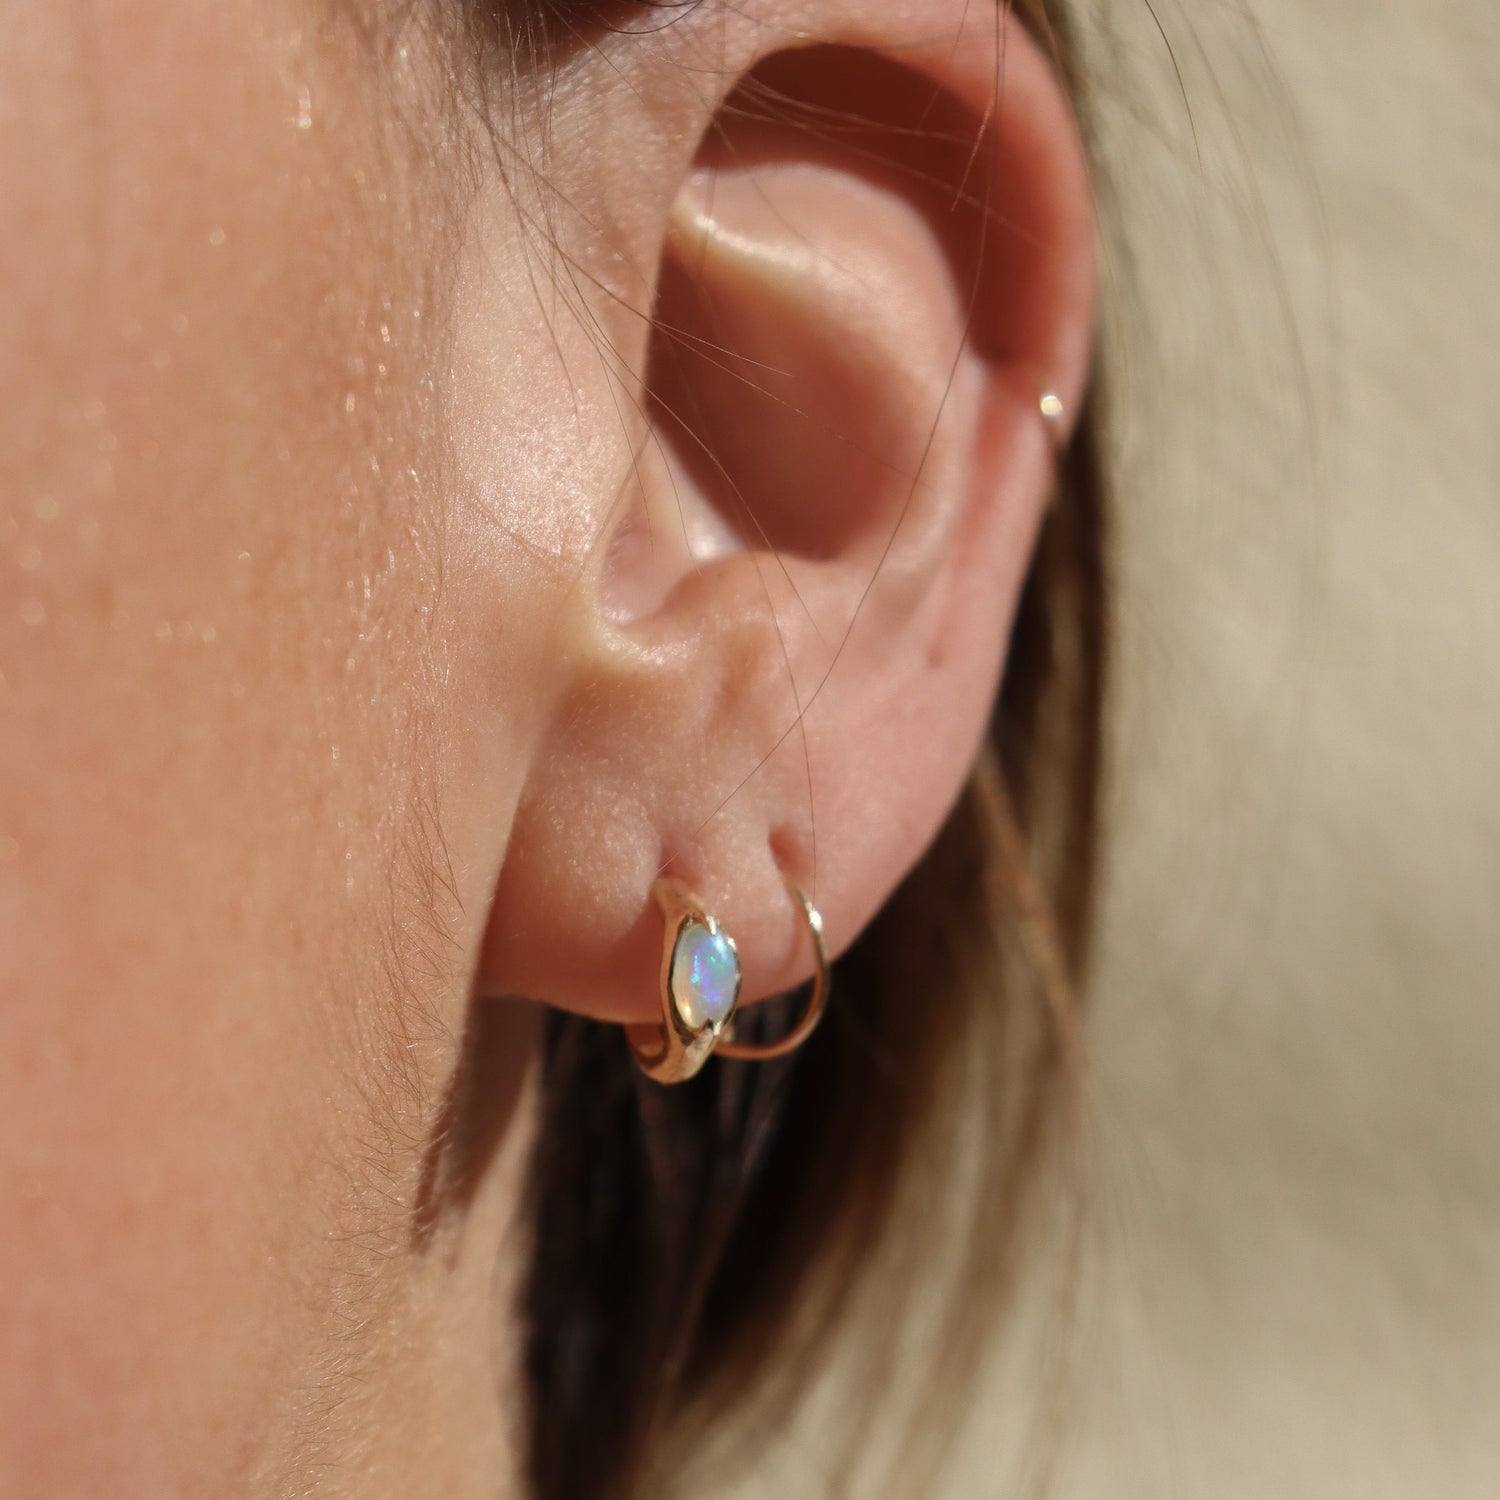 Ear wearing opal huggie hoops to show size